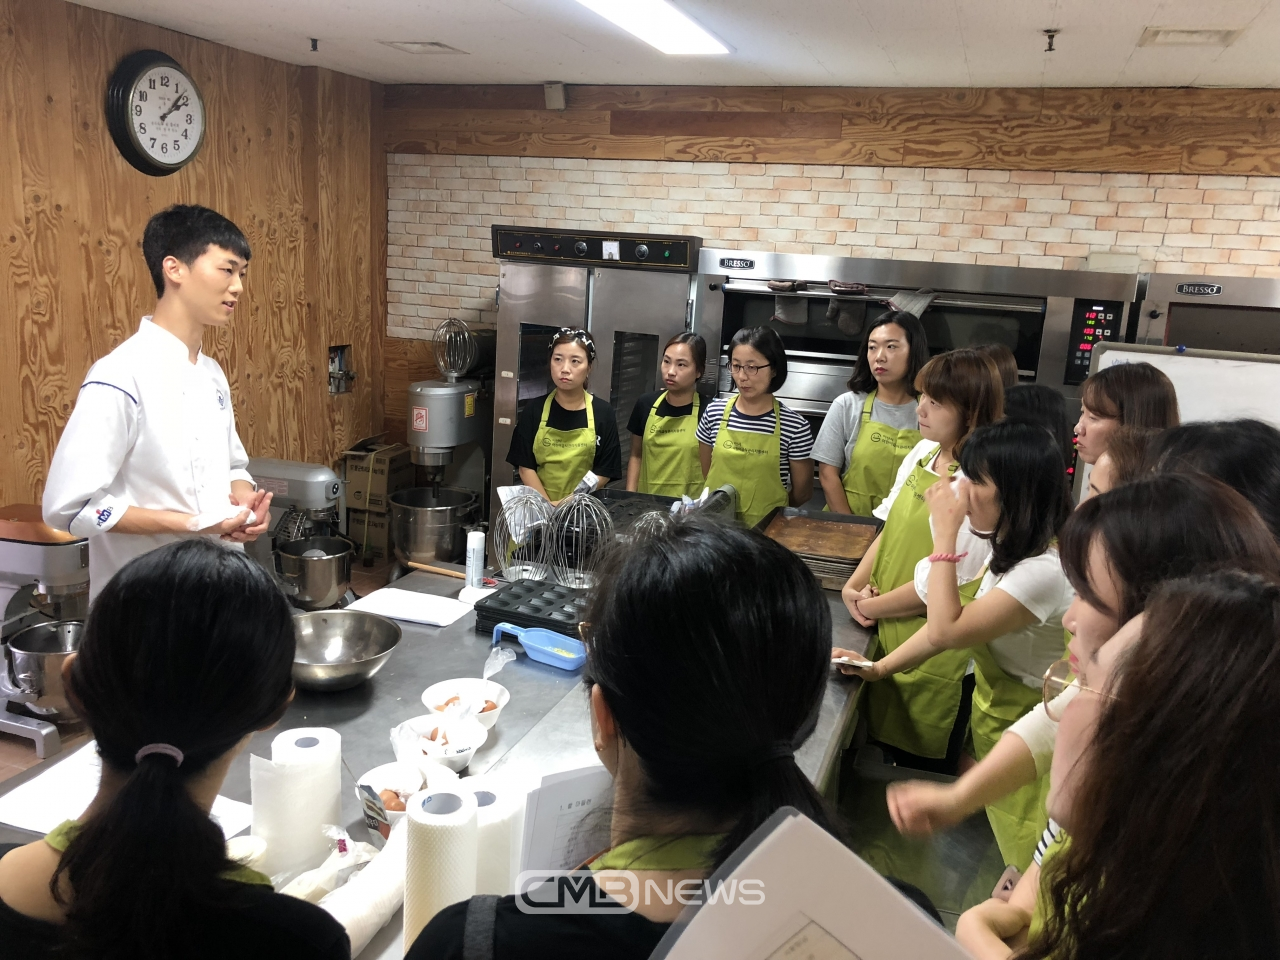 아산시어린이급식관리지원센터가 운영하는 요리실습에서 학부모들이 강사의 설명을 듣고 실습하는 모습 (사진제공 : 아산시청)